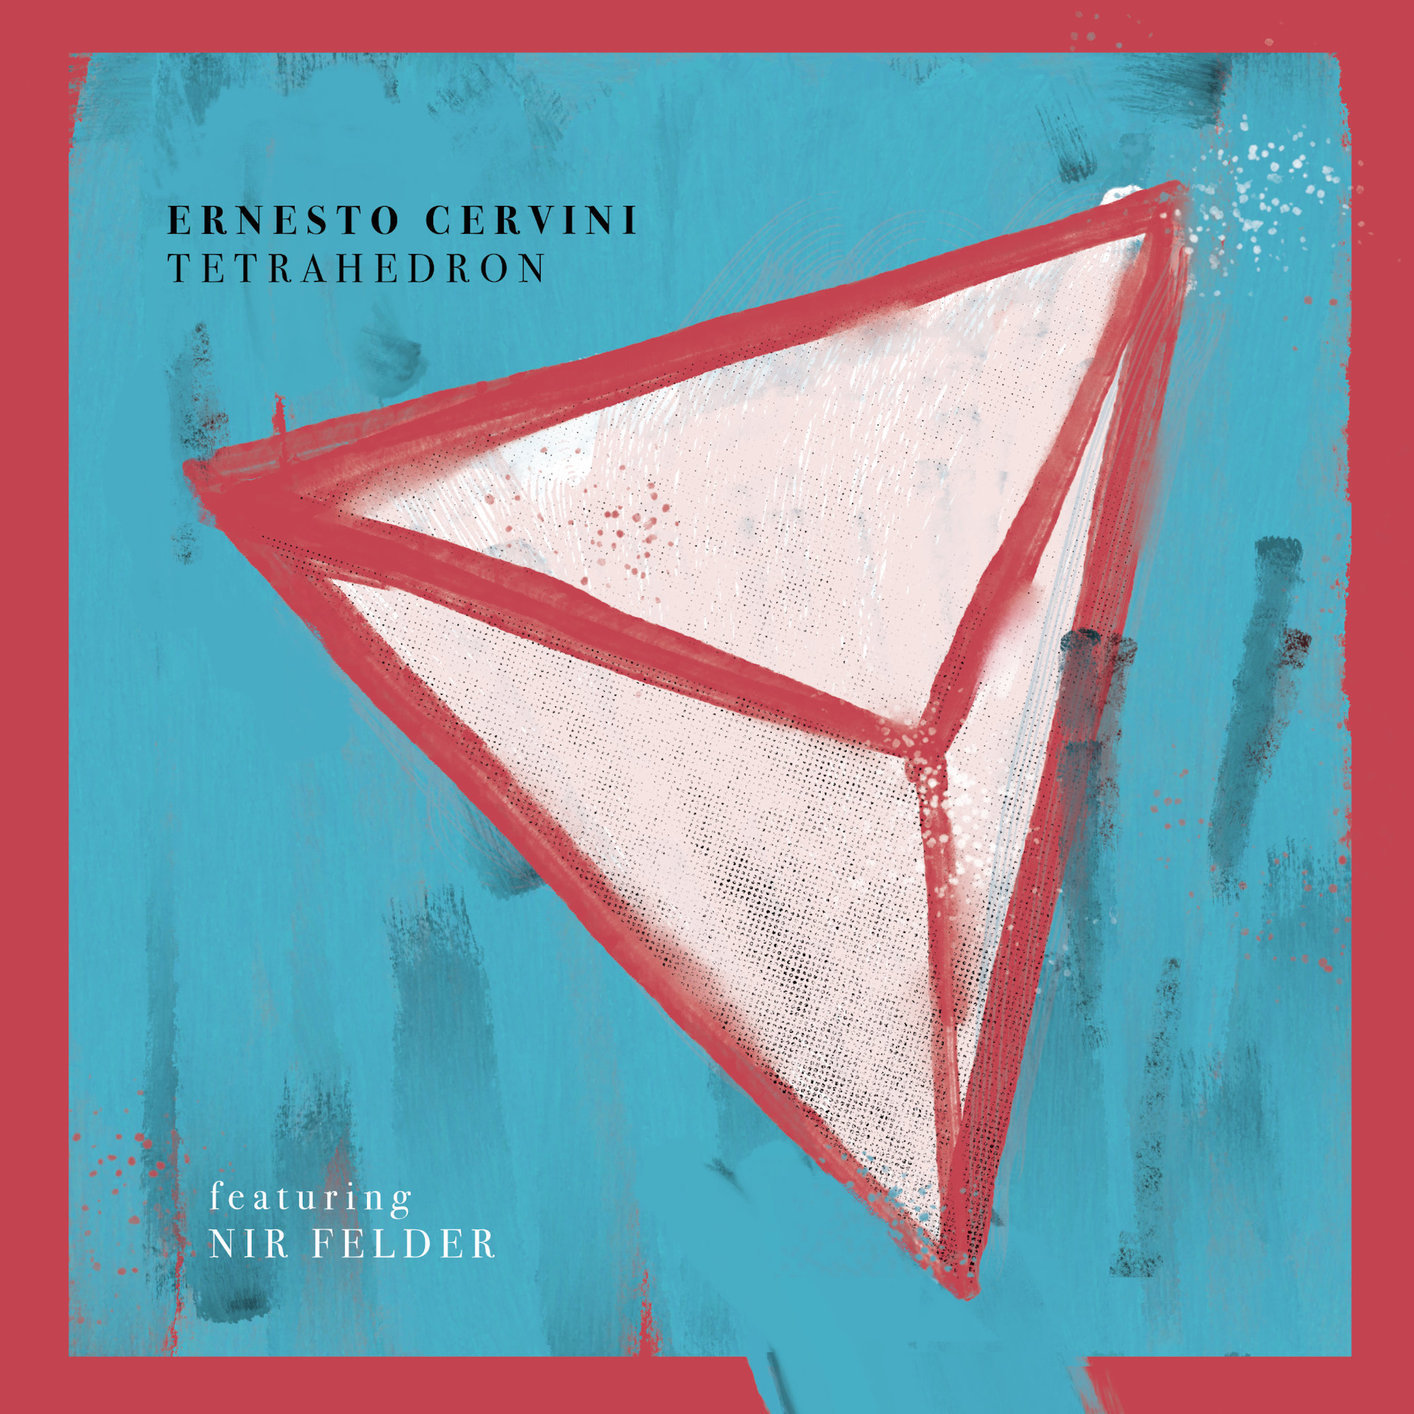 Ernesto Cervini - Tetrahedron (2020) [FLAC 24bit/96kHz]